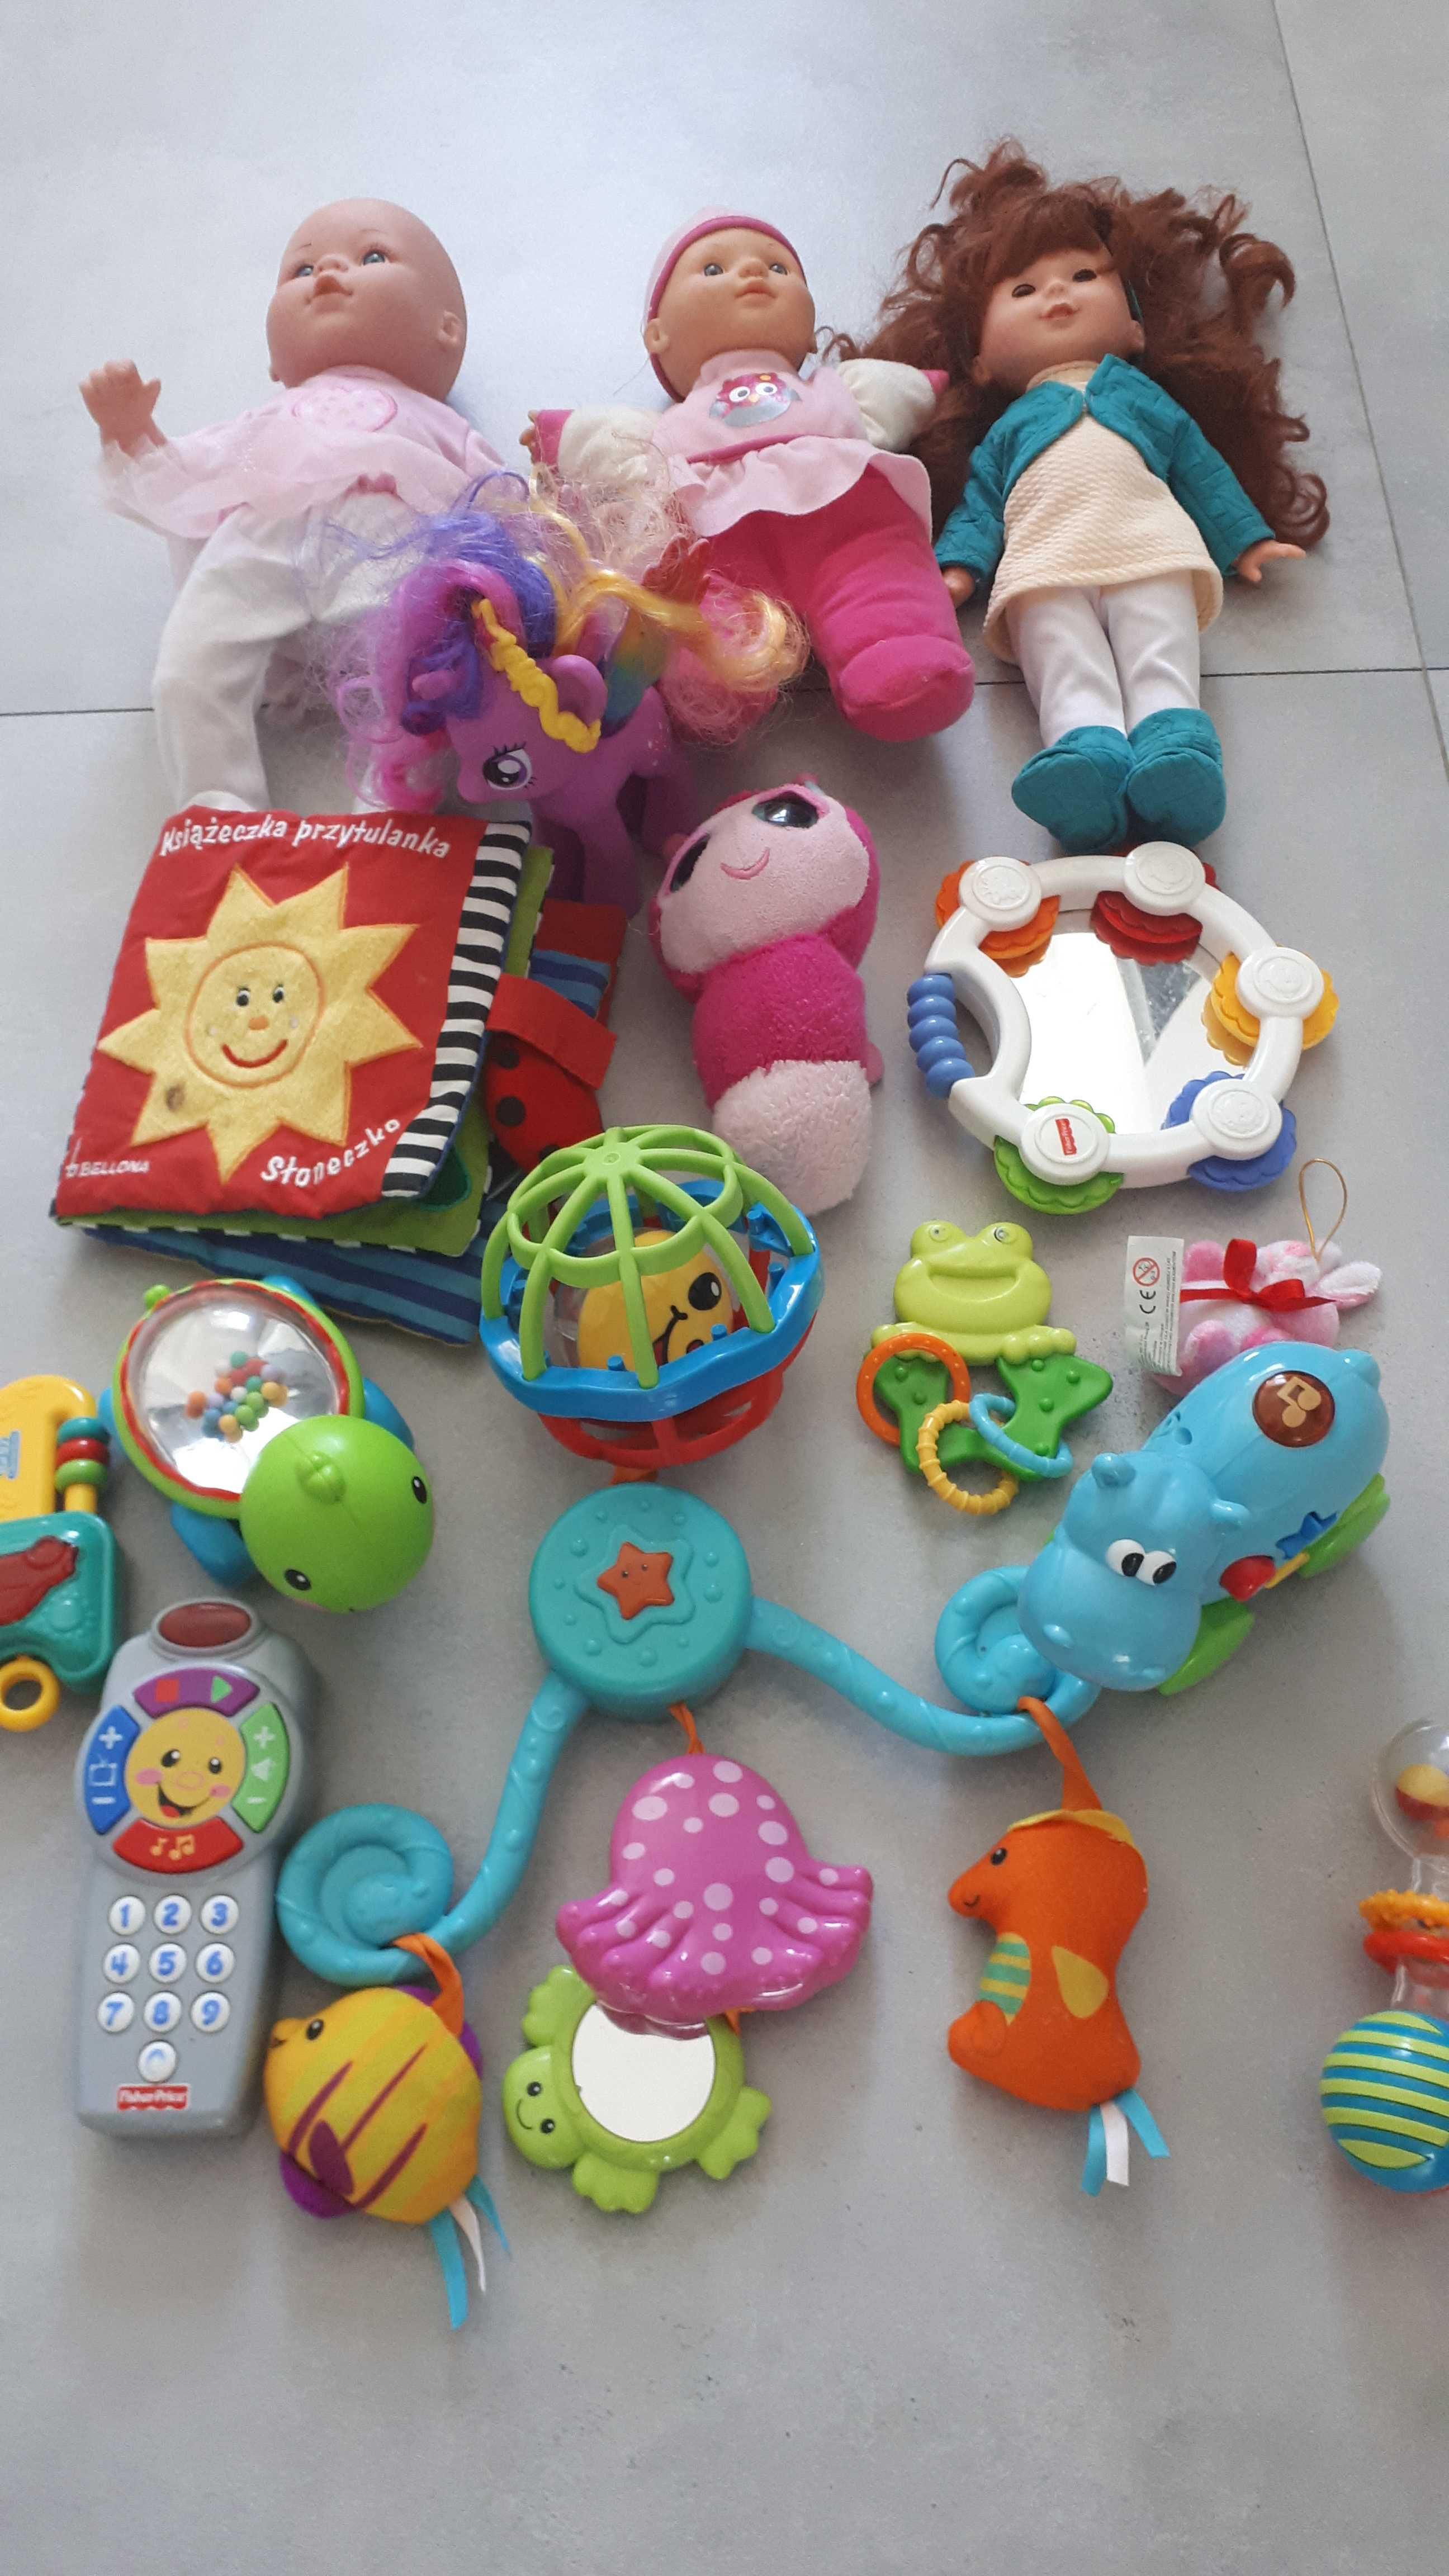 Zabawki zestaw nr 2 dla dzieci 0-3 lata